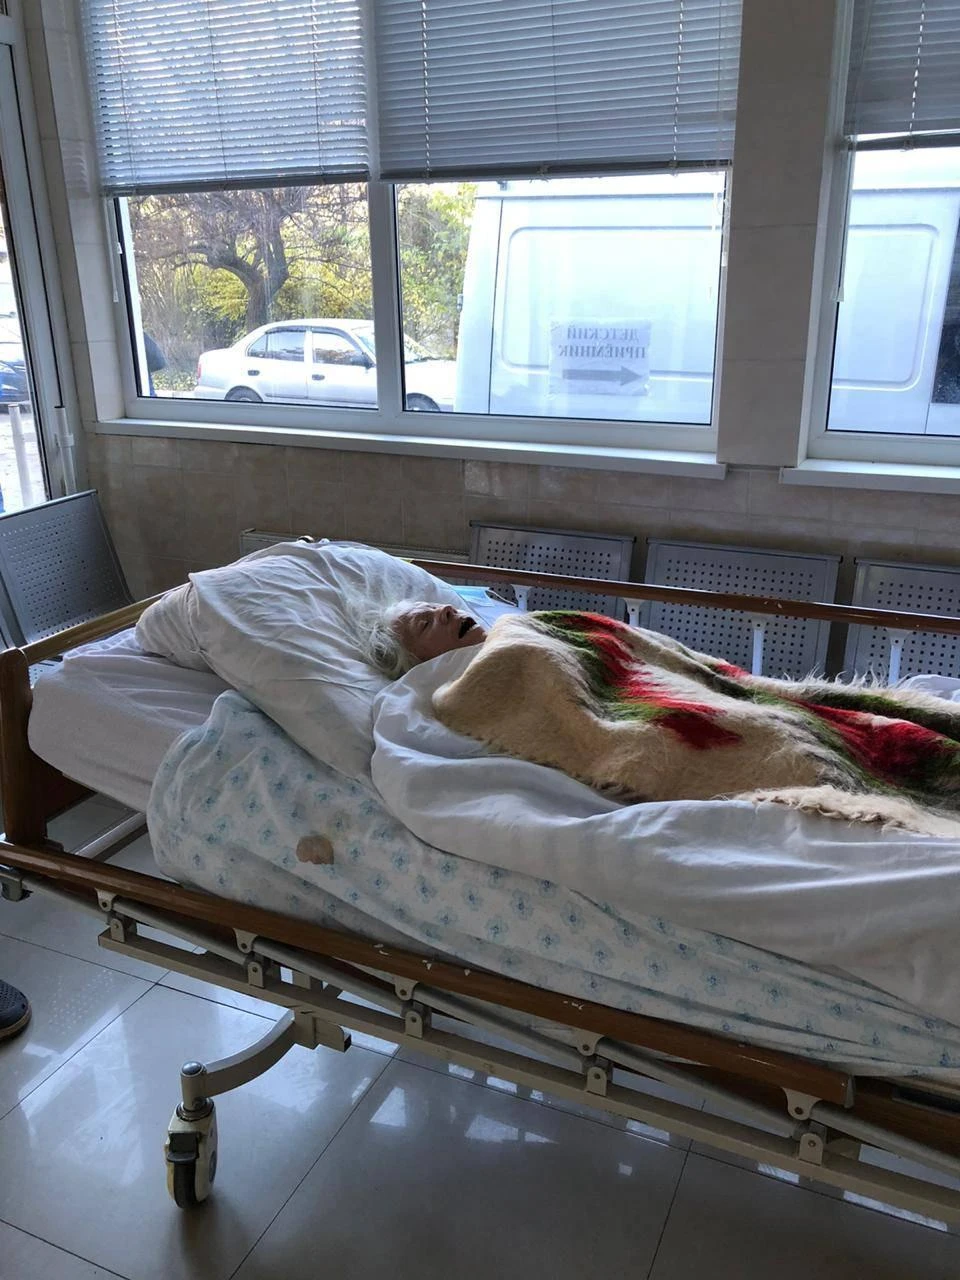 Пожилую женщину с деменцией отказались принимать в Ливадийской больнице. Фото: группа в Facebook "Честная Ялта"